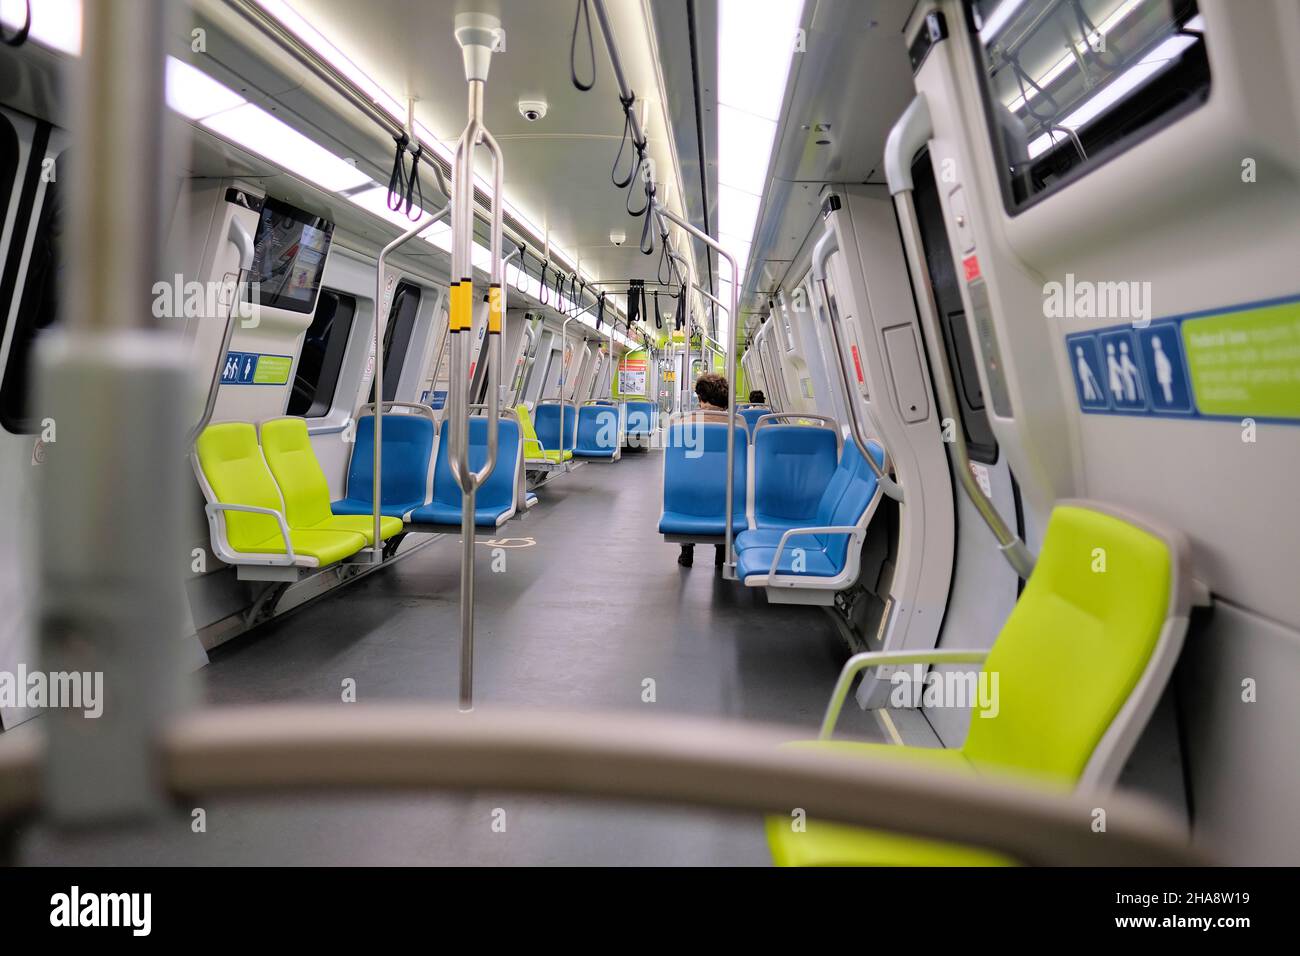 Innenansicht des Sitzbereichs des Bay Area Rapid Transit-U-Bahn-Wagens; Sitzplätze für öffentliche BART-Verkehrsmittel in San Francisco, Kalifornien. Stockfoto